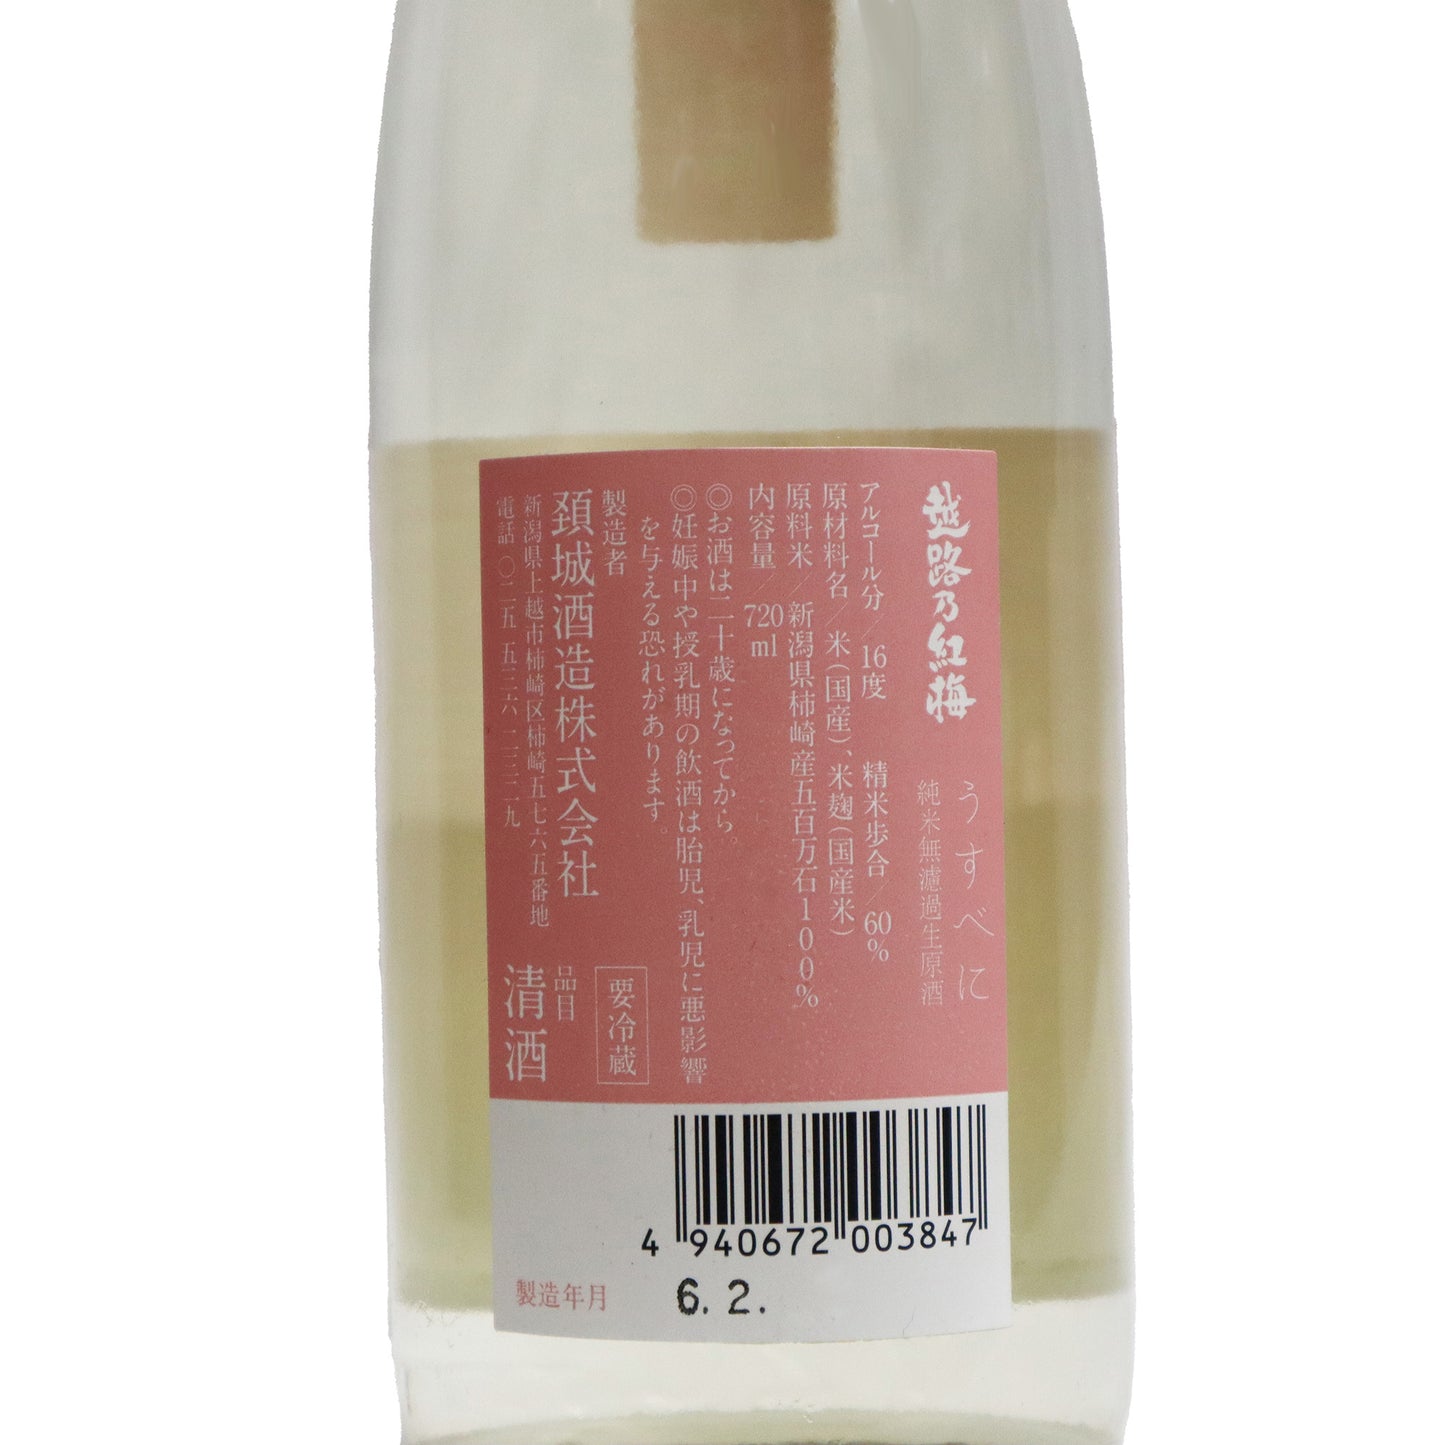 【越路乃紅梅】うすべに 純米原酒 720ml/頚城酒造